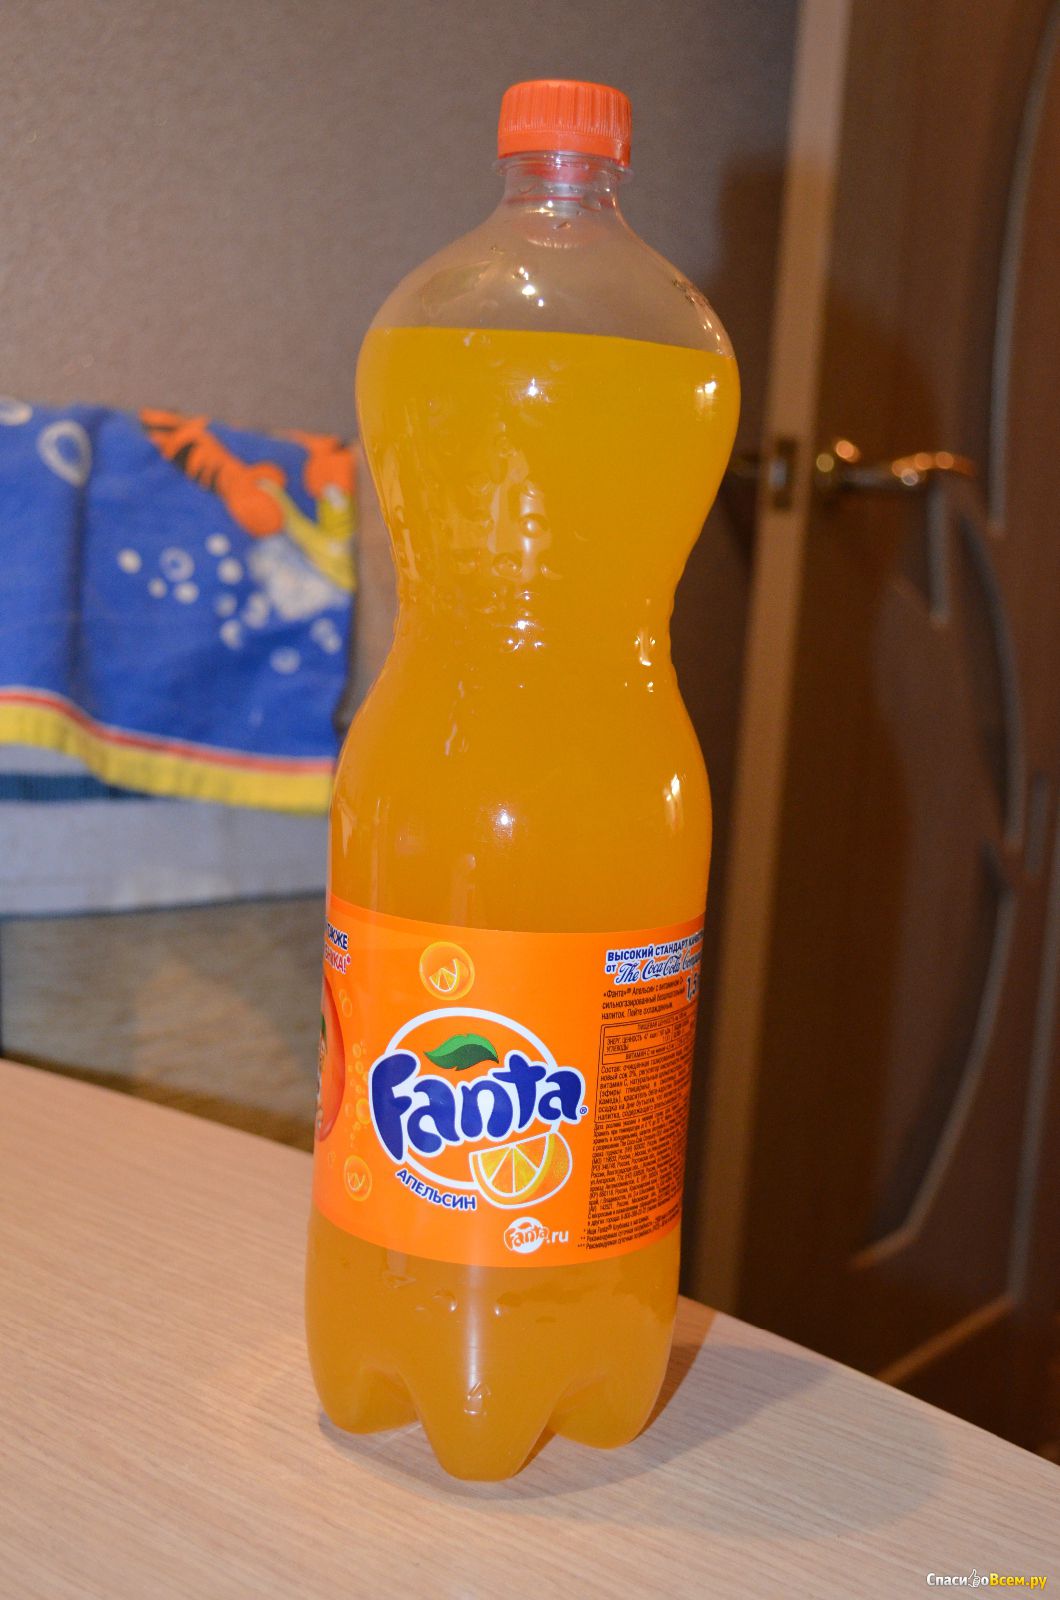 Апельсиновая газированная вода. Напиток Фанта апельсин 2лмиии. Fanta апельсин сок. Фанта апельсин 2лррррнннн. Газировка Фанта.